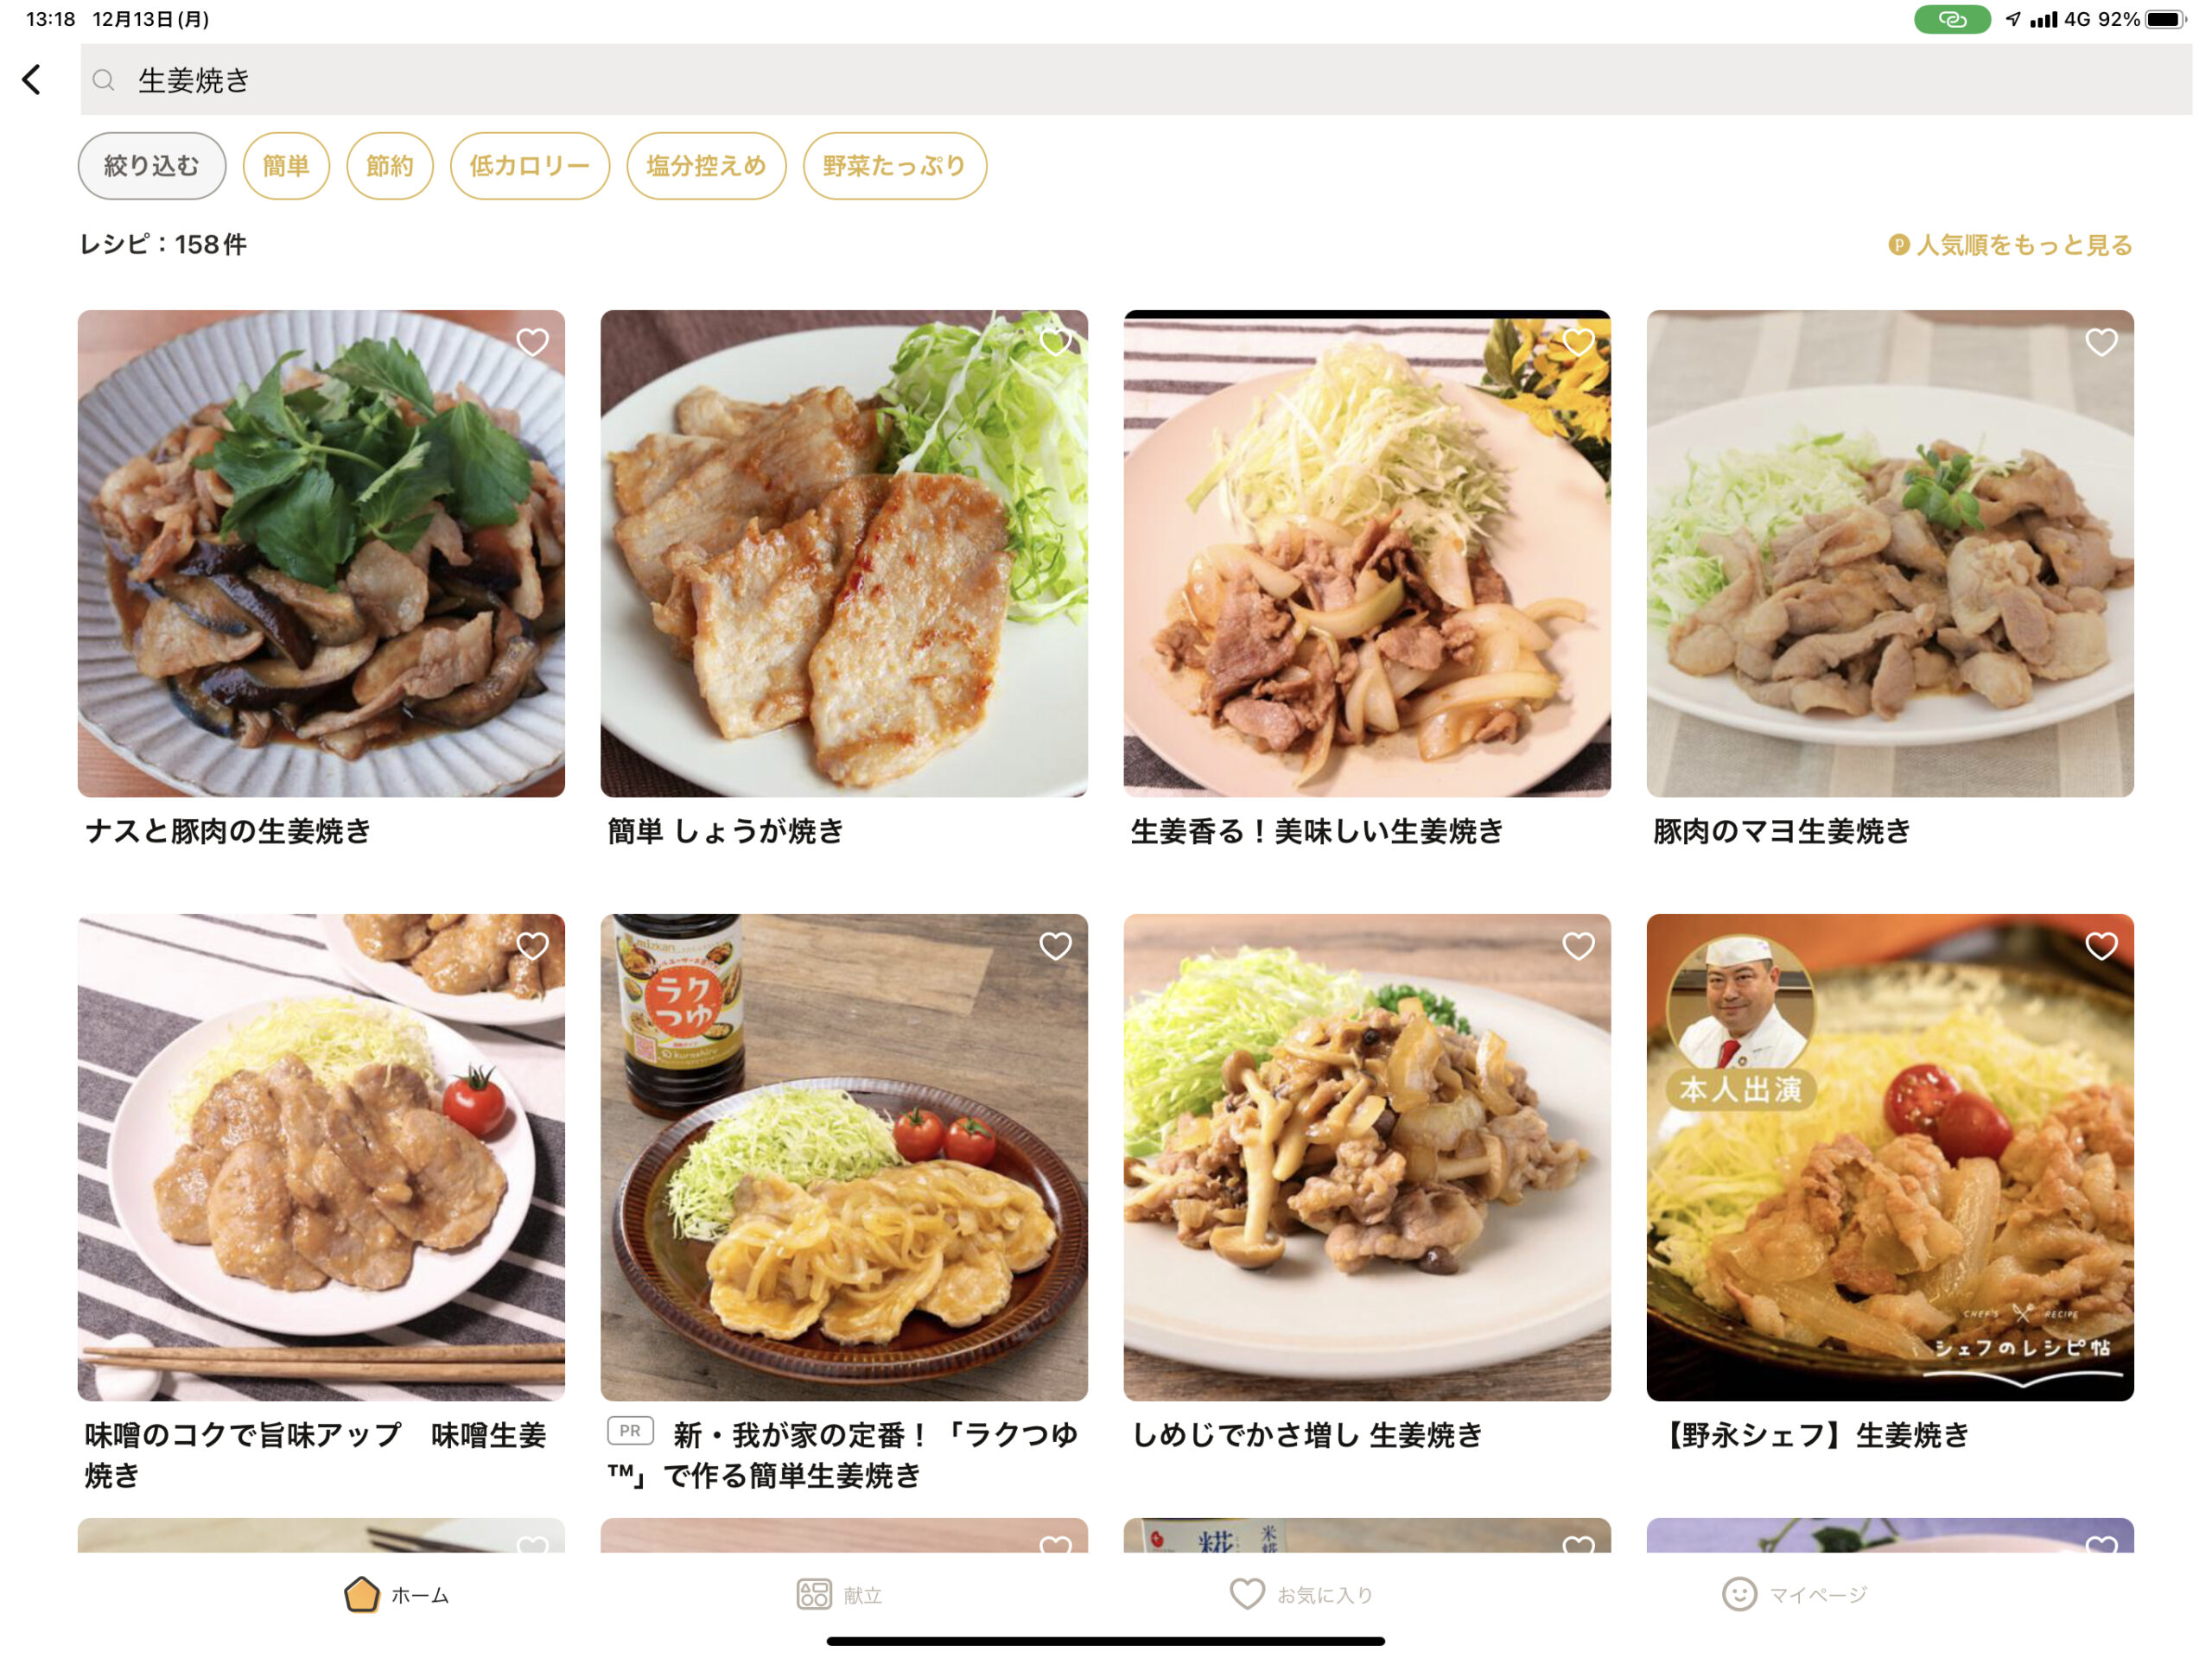 クラシルのアプリで生姜焼きと検索した結果